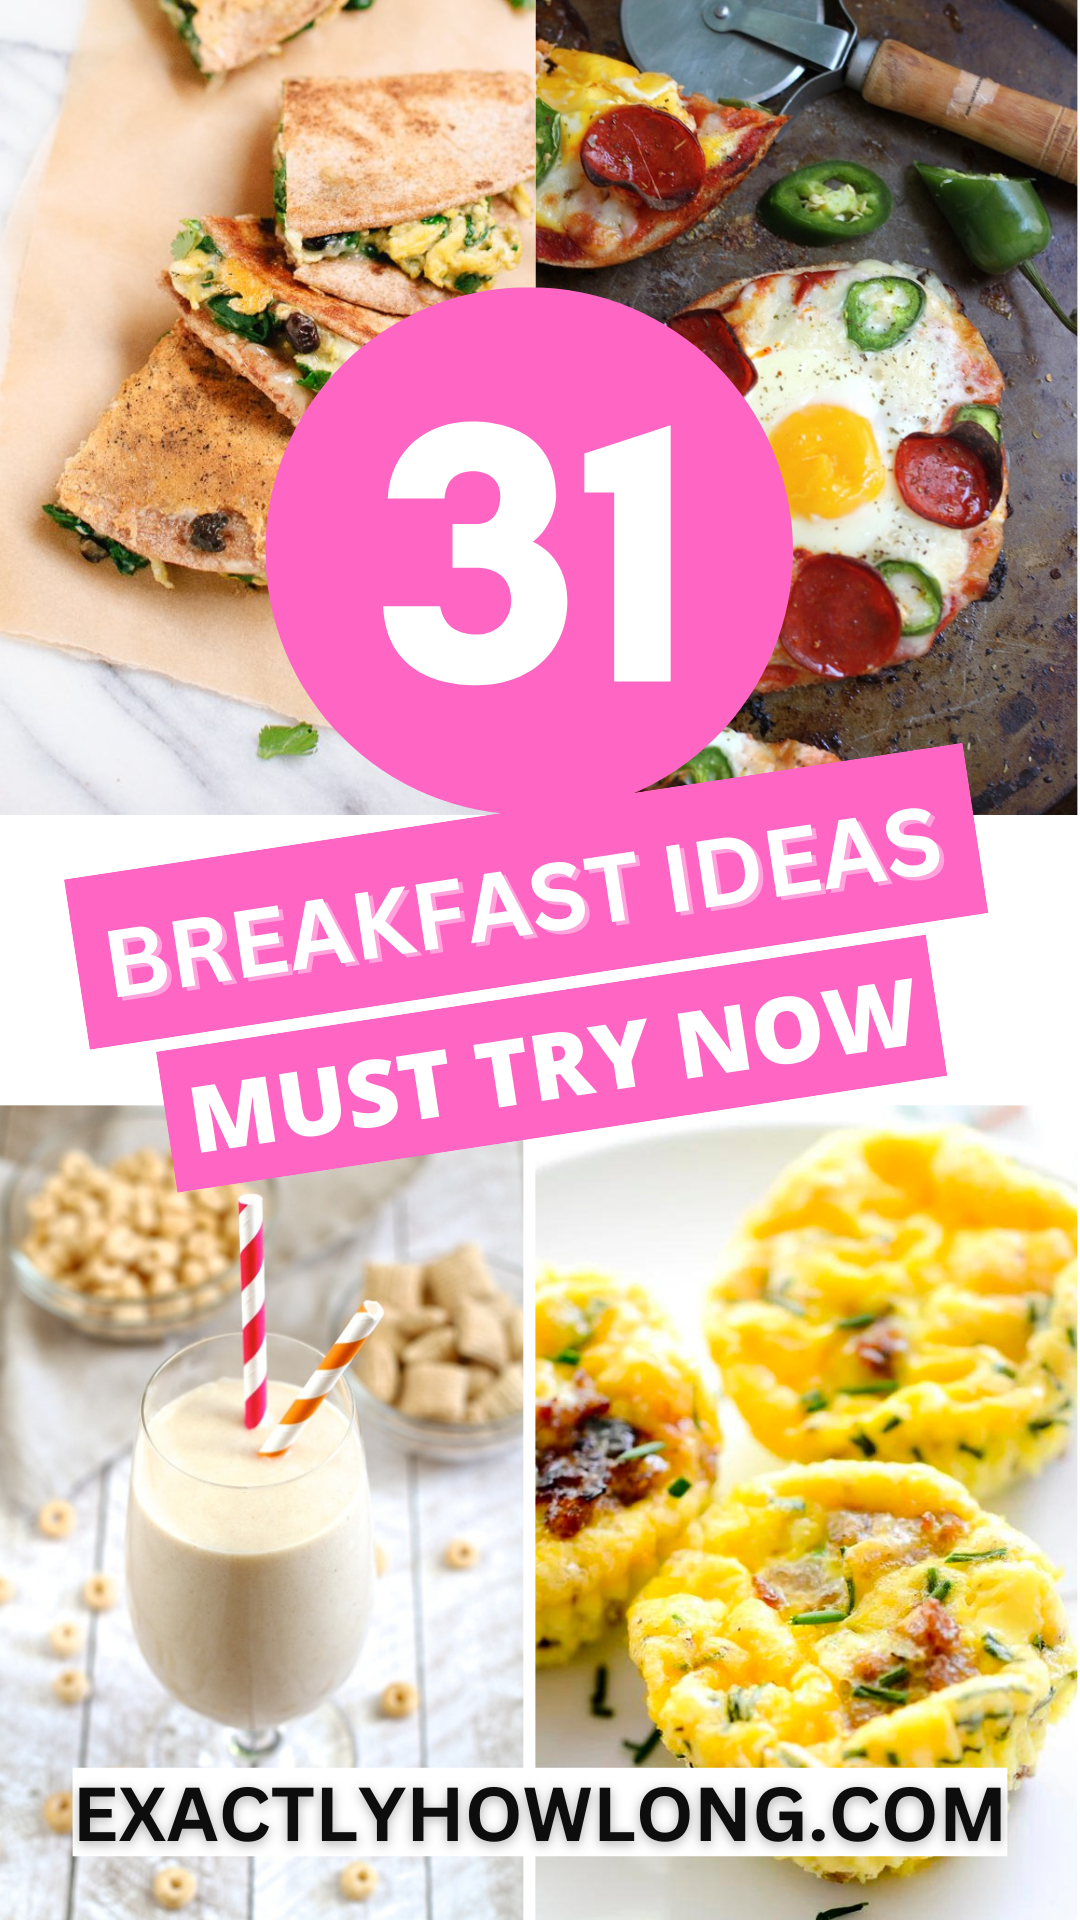 Ý tưởng bữa sáng làm hài lòng đám đông: ngon miệng, nhanh chóng, dễ dàng và vui vẻ cho cả nhóm